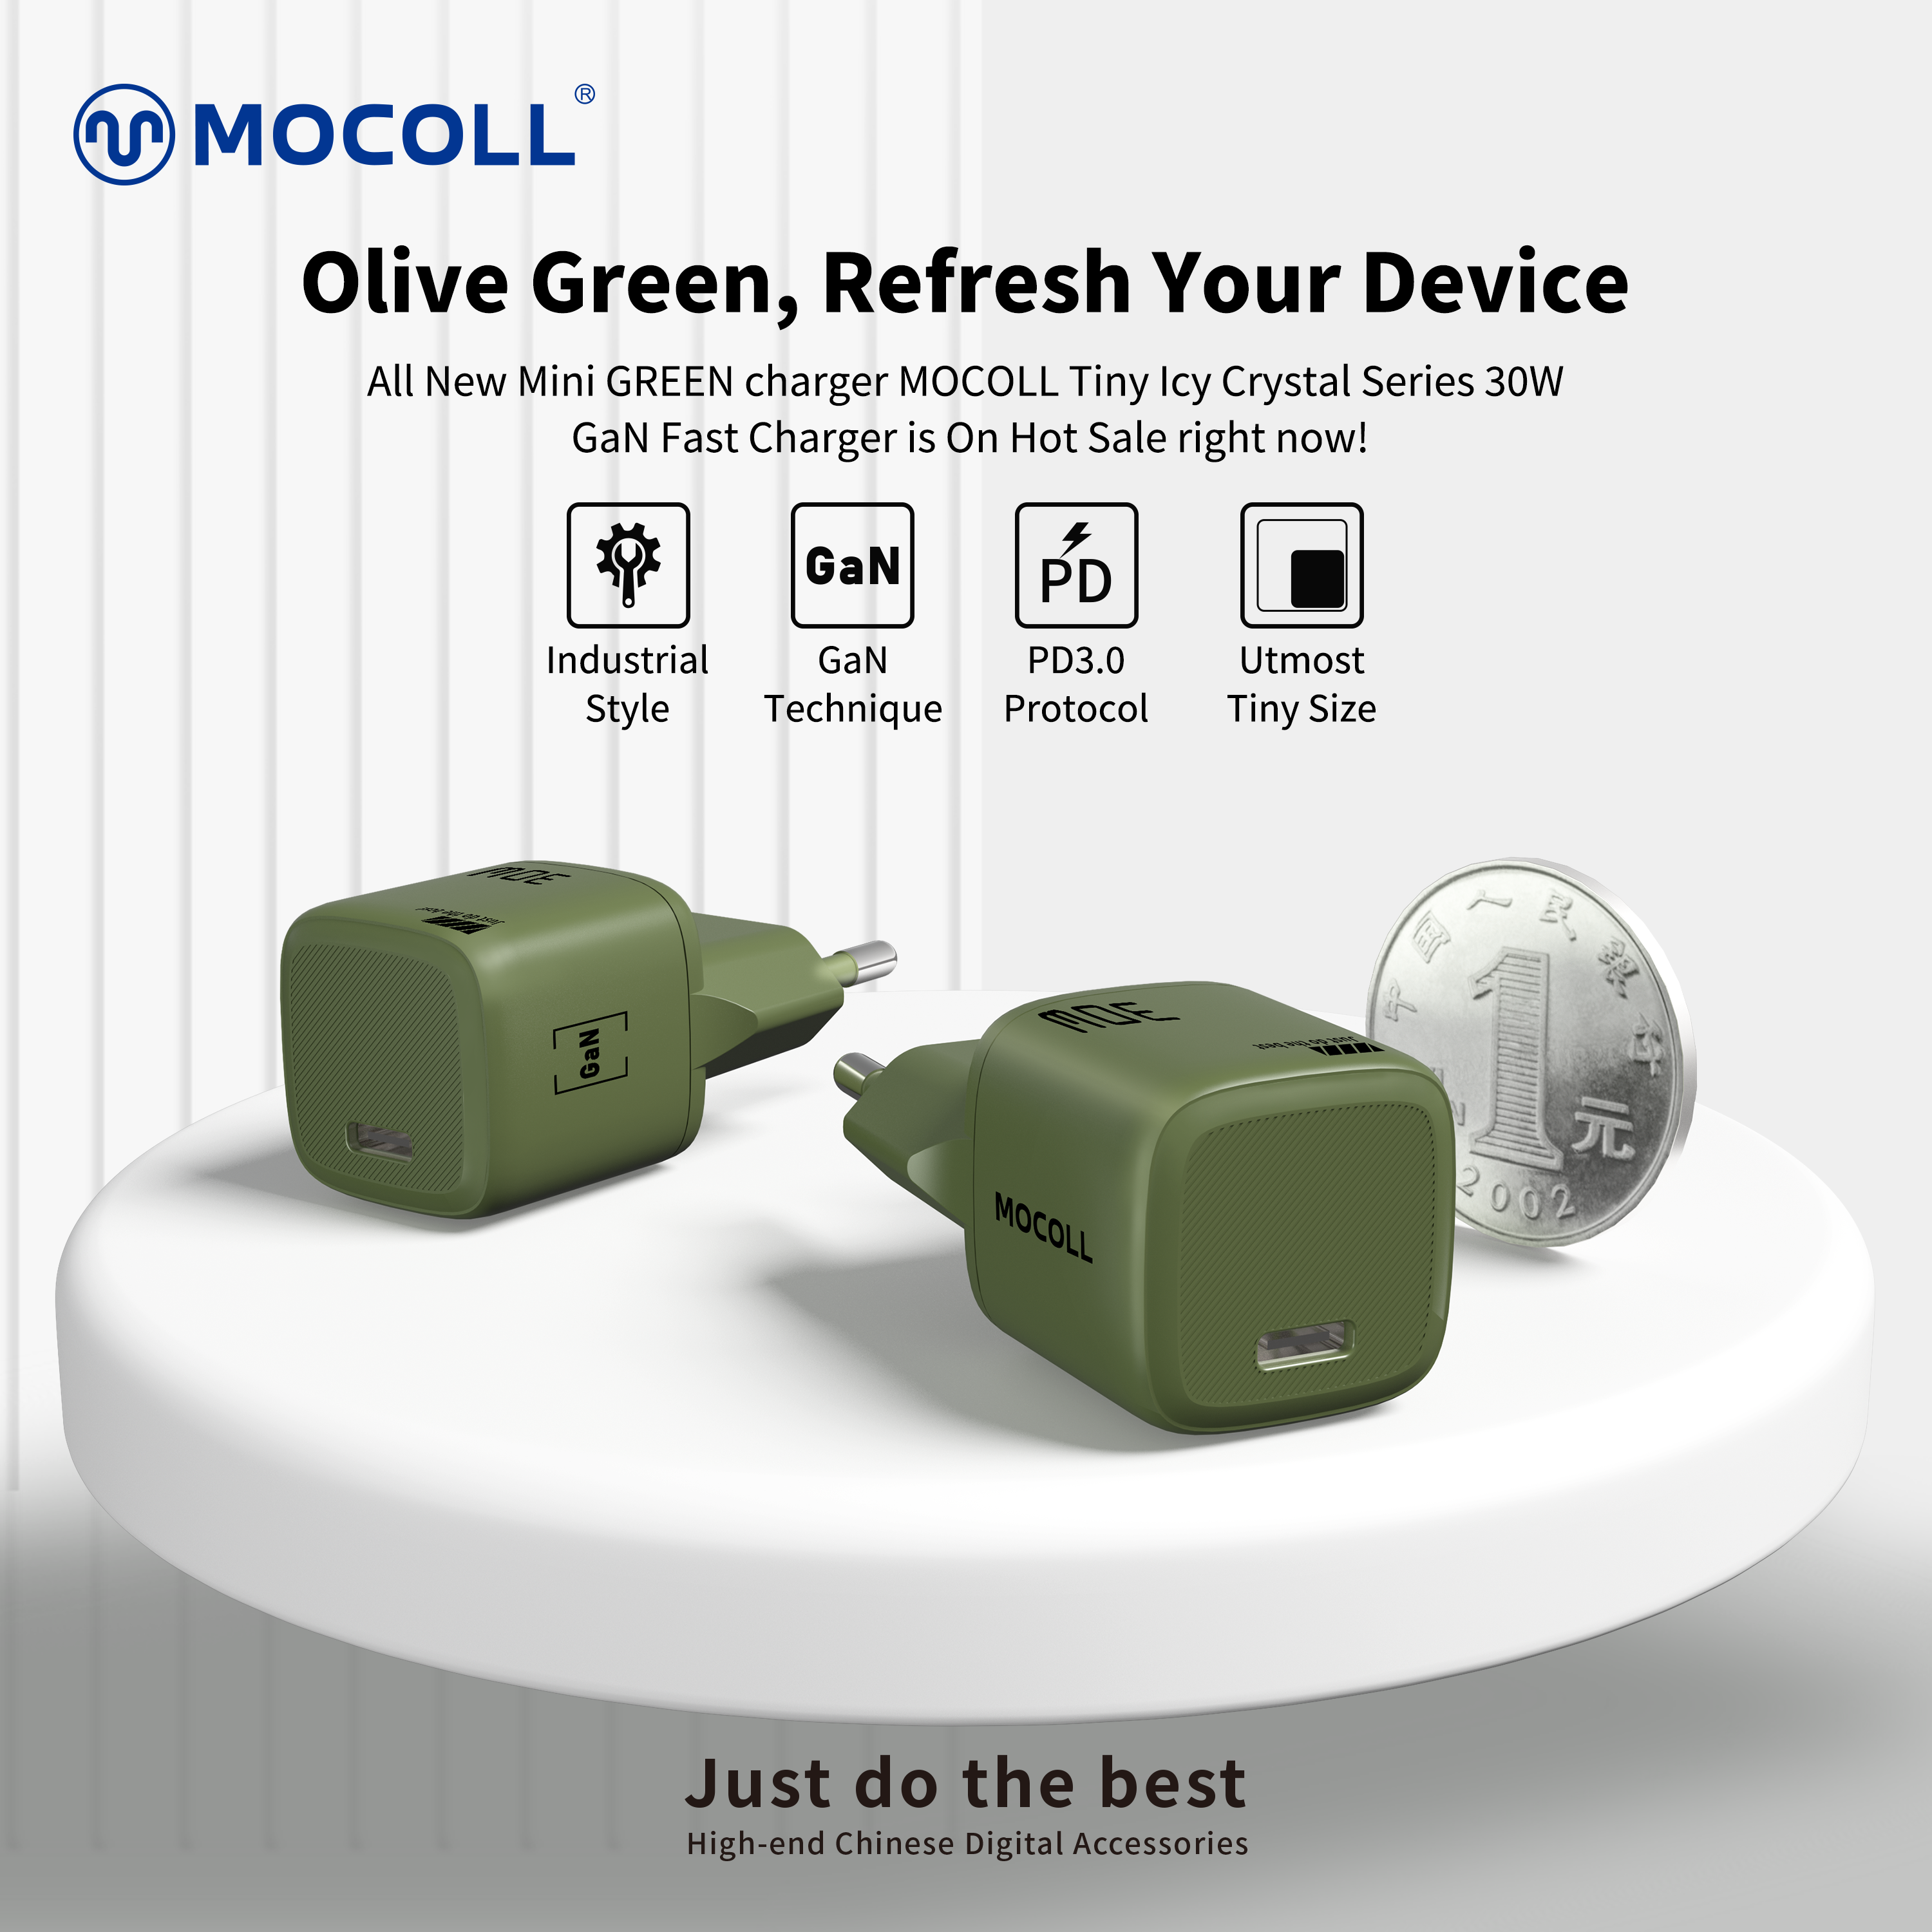 a verde | Estilo industrial, nuevo cargador rápido MOCOLL GaN 30W verde oliva